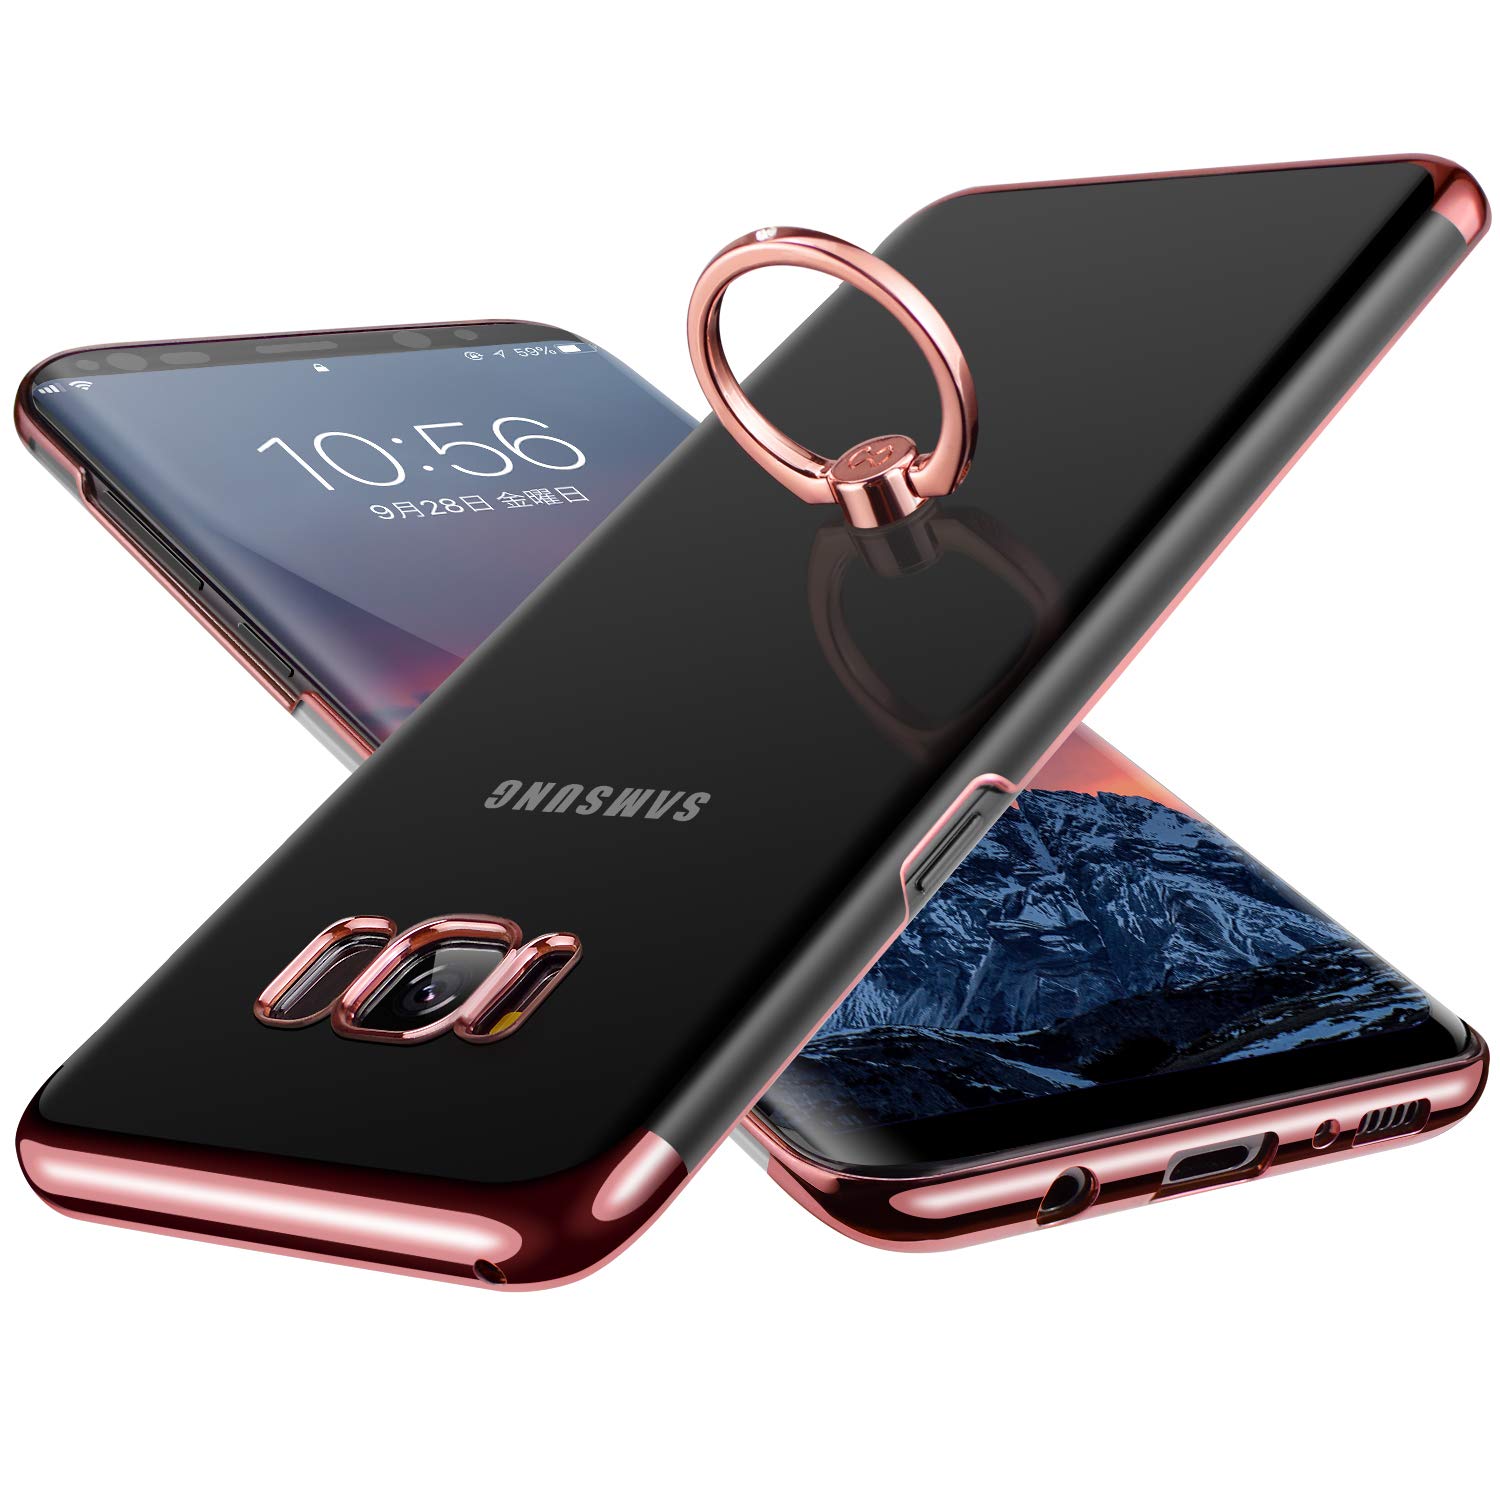 E Segoi Samsung Galaxy S8 Plus ケース リング付き 落下防止 耐衝撃 スタンド機能 メッキ加工 透明 PC おしゃれ 薄型 軽量 一体型 ギャラクシーs8 plus ケース 全面保護カバー Galaxy S8+ ケース (Galaxy S8+, ローズピンク)